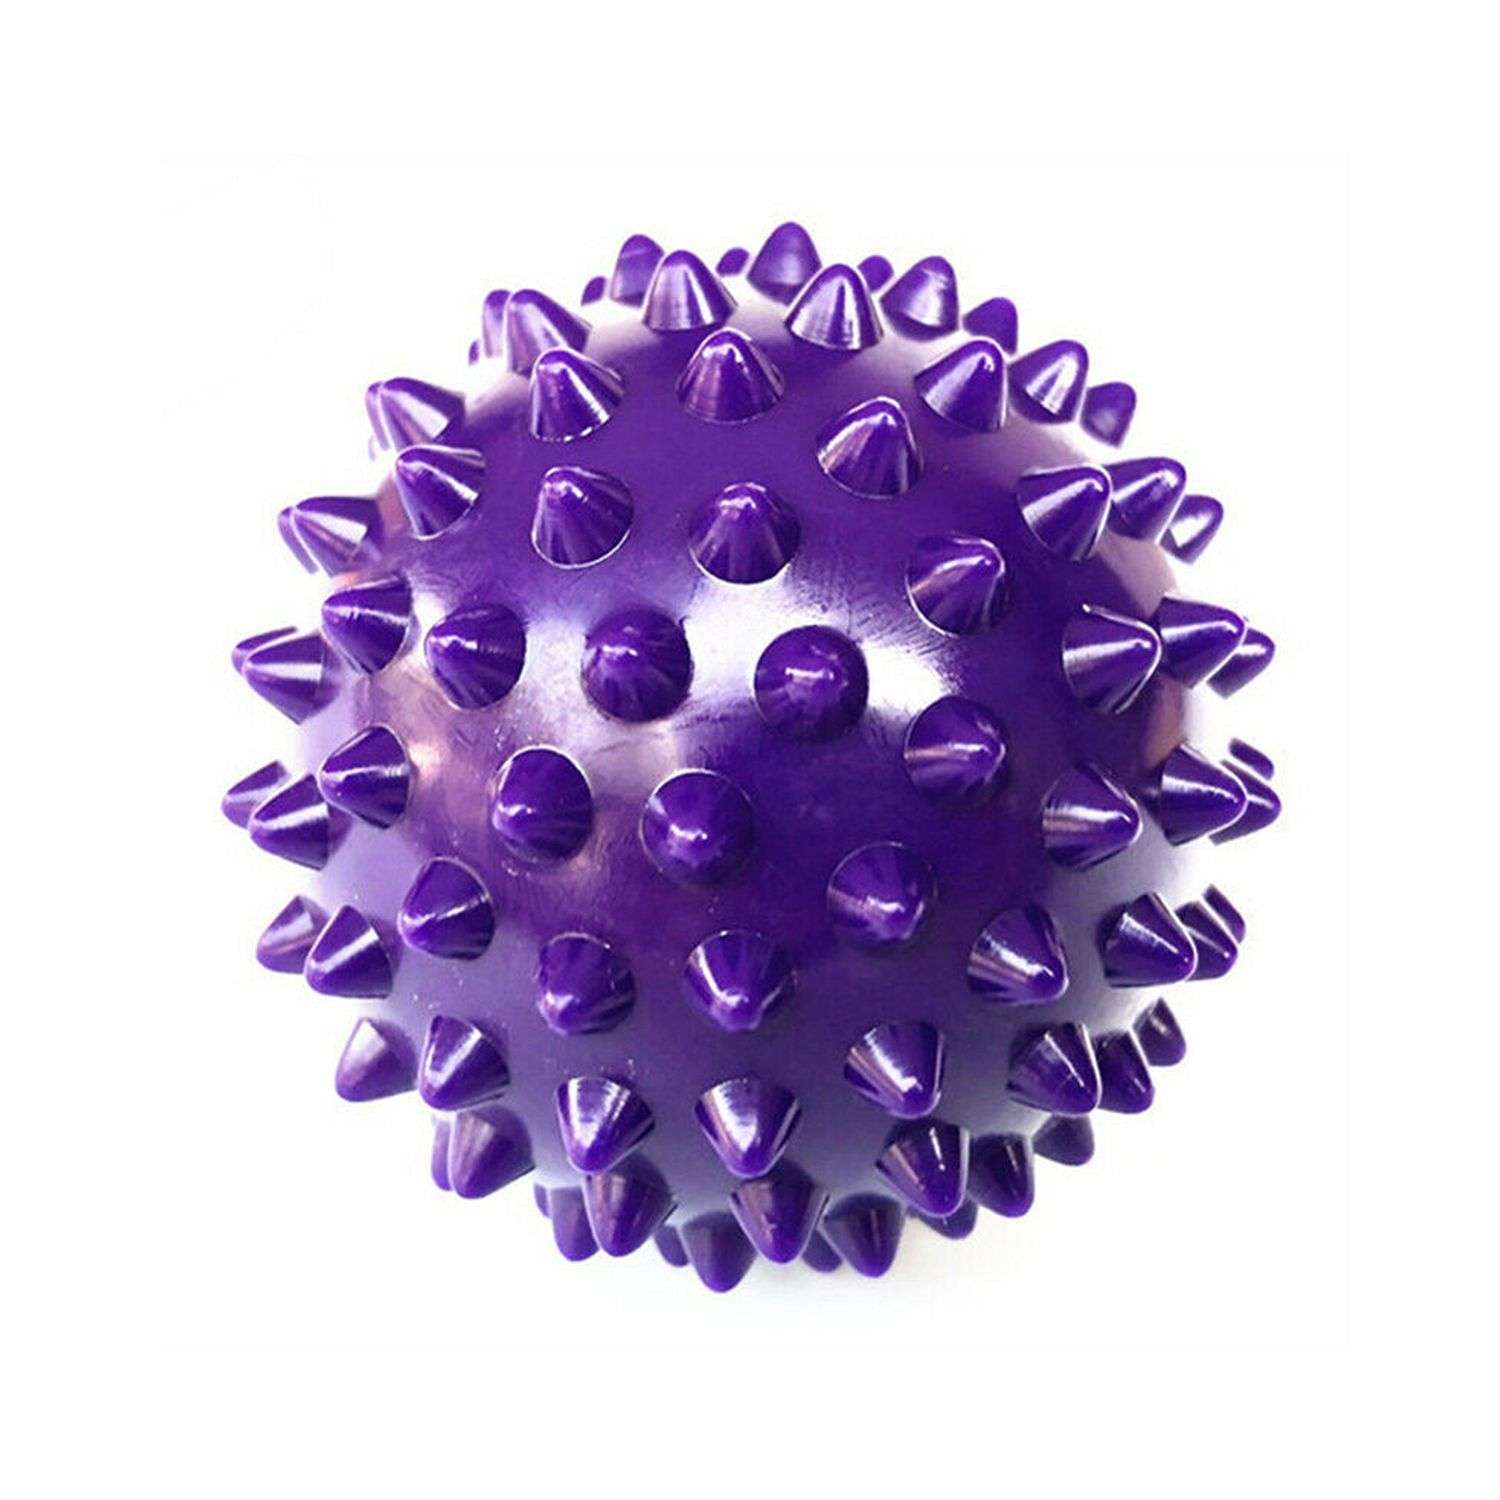 Мячик Beroma массажный 7 см фиолетовый - фото 1